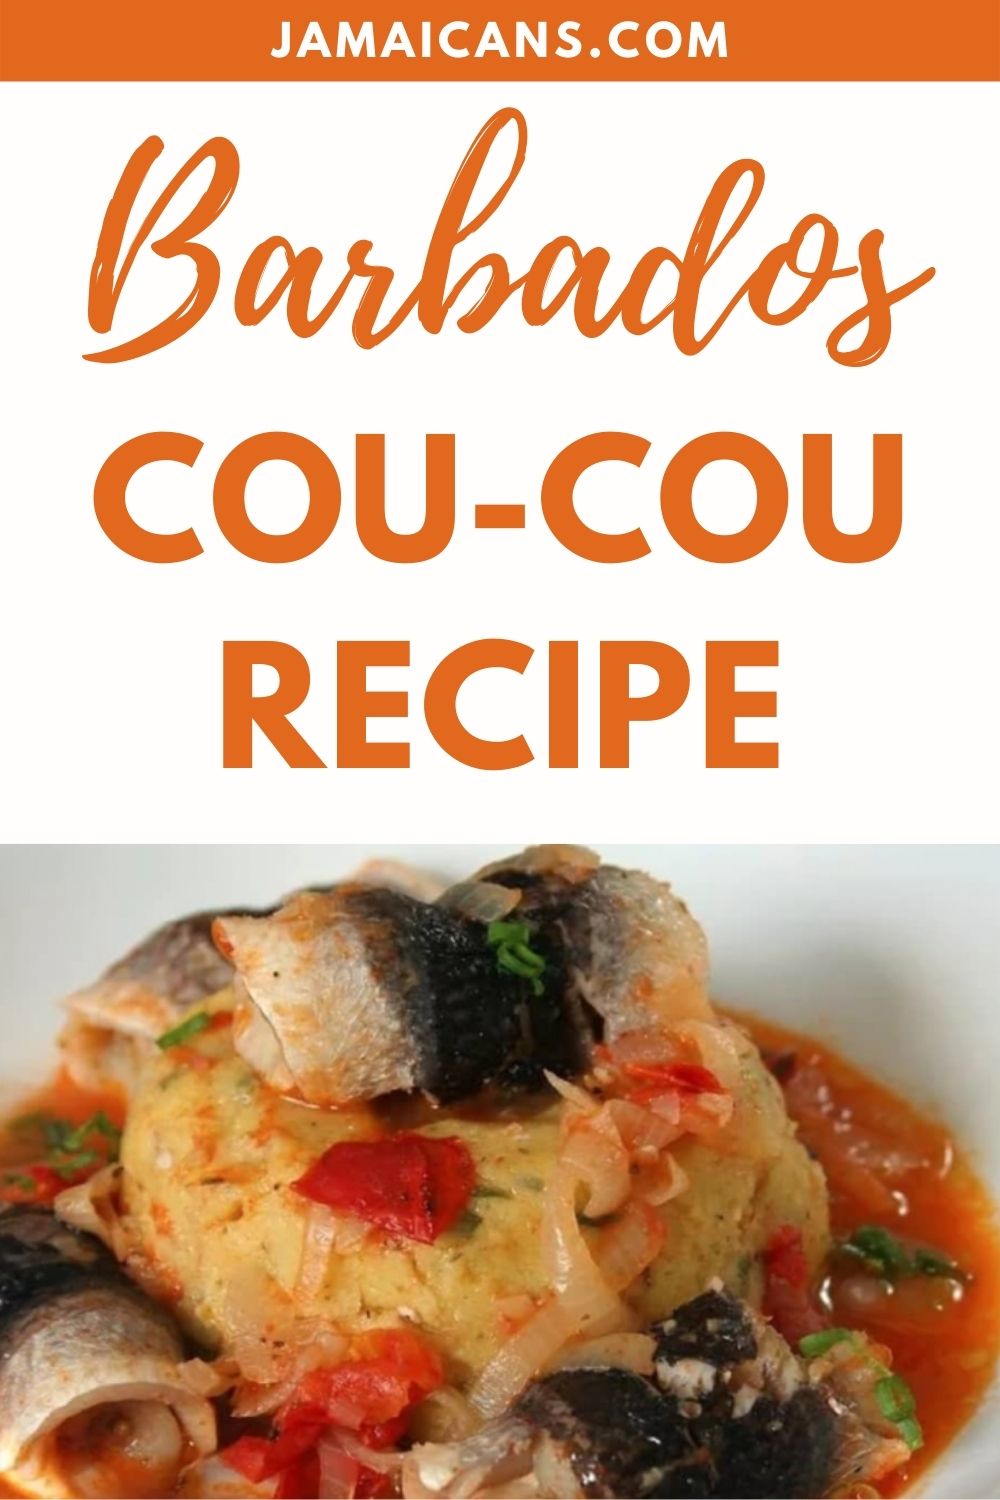 Barbados Cou-Cou Recipe